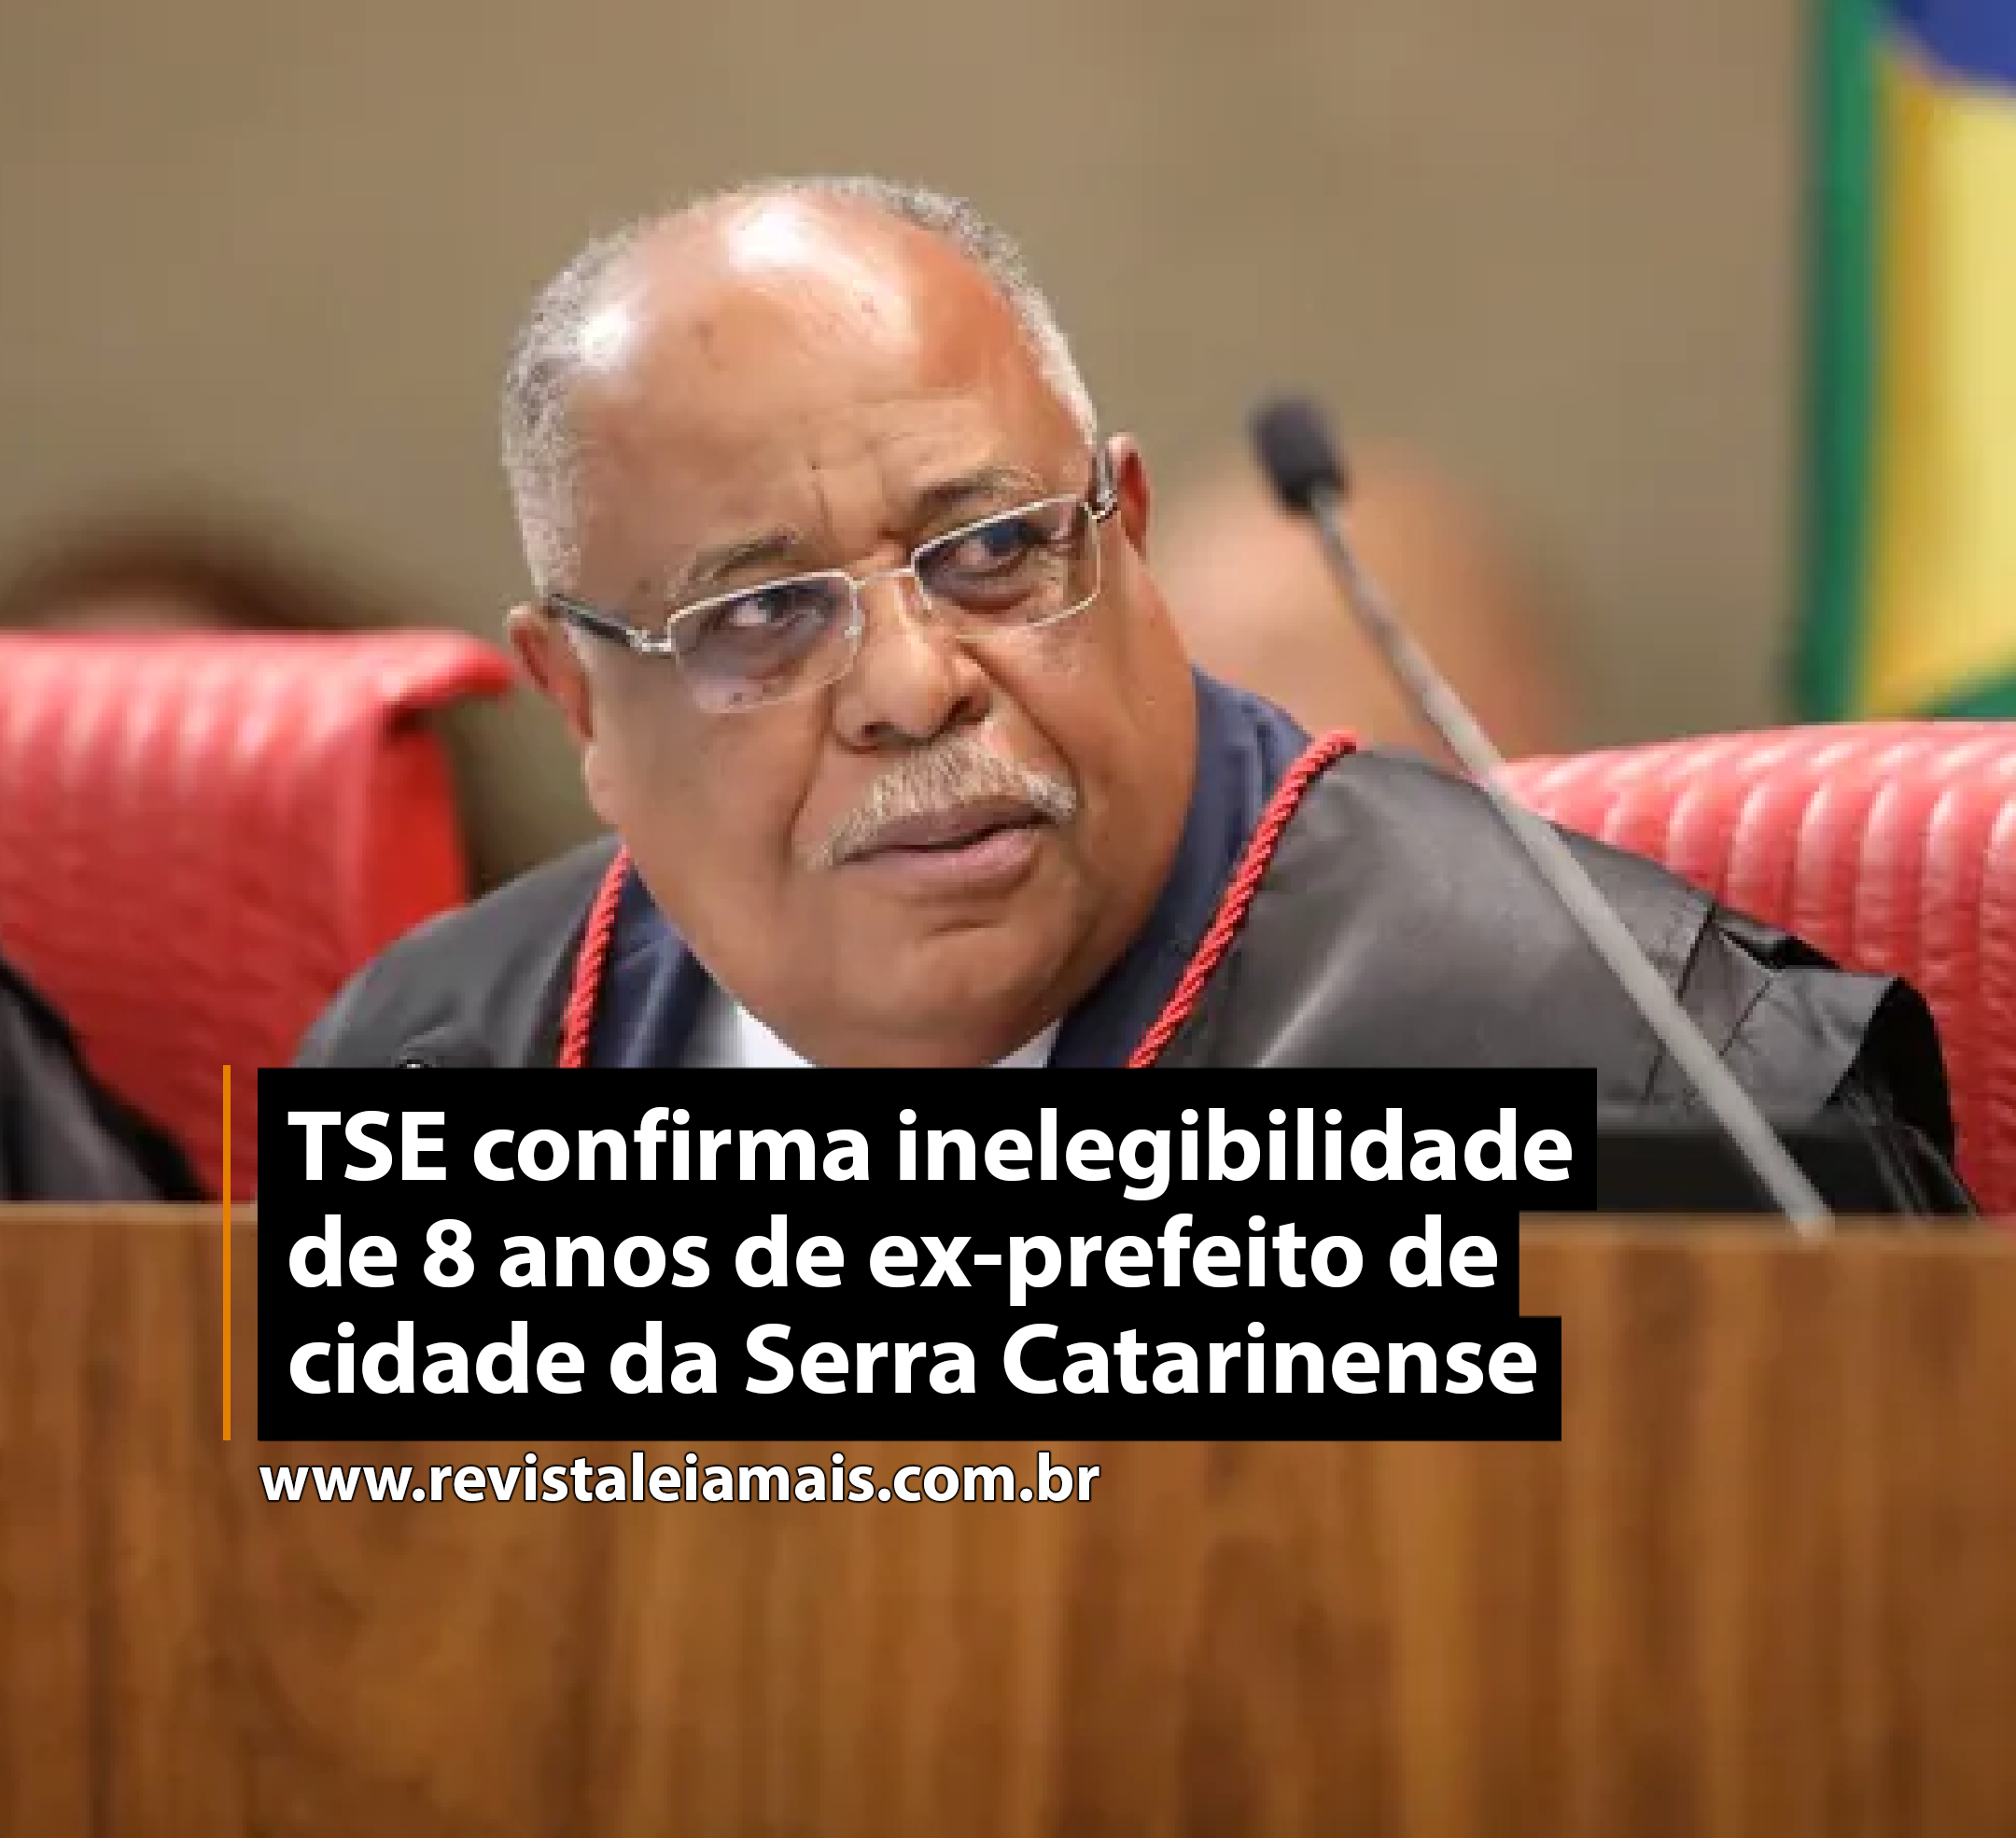 TSE confirma inelegibilidade de 8 anos de ex-prefeito de cidade da Serra Catarinense